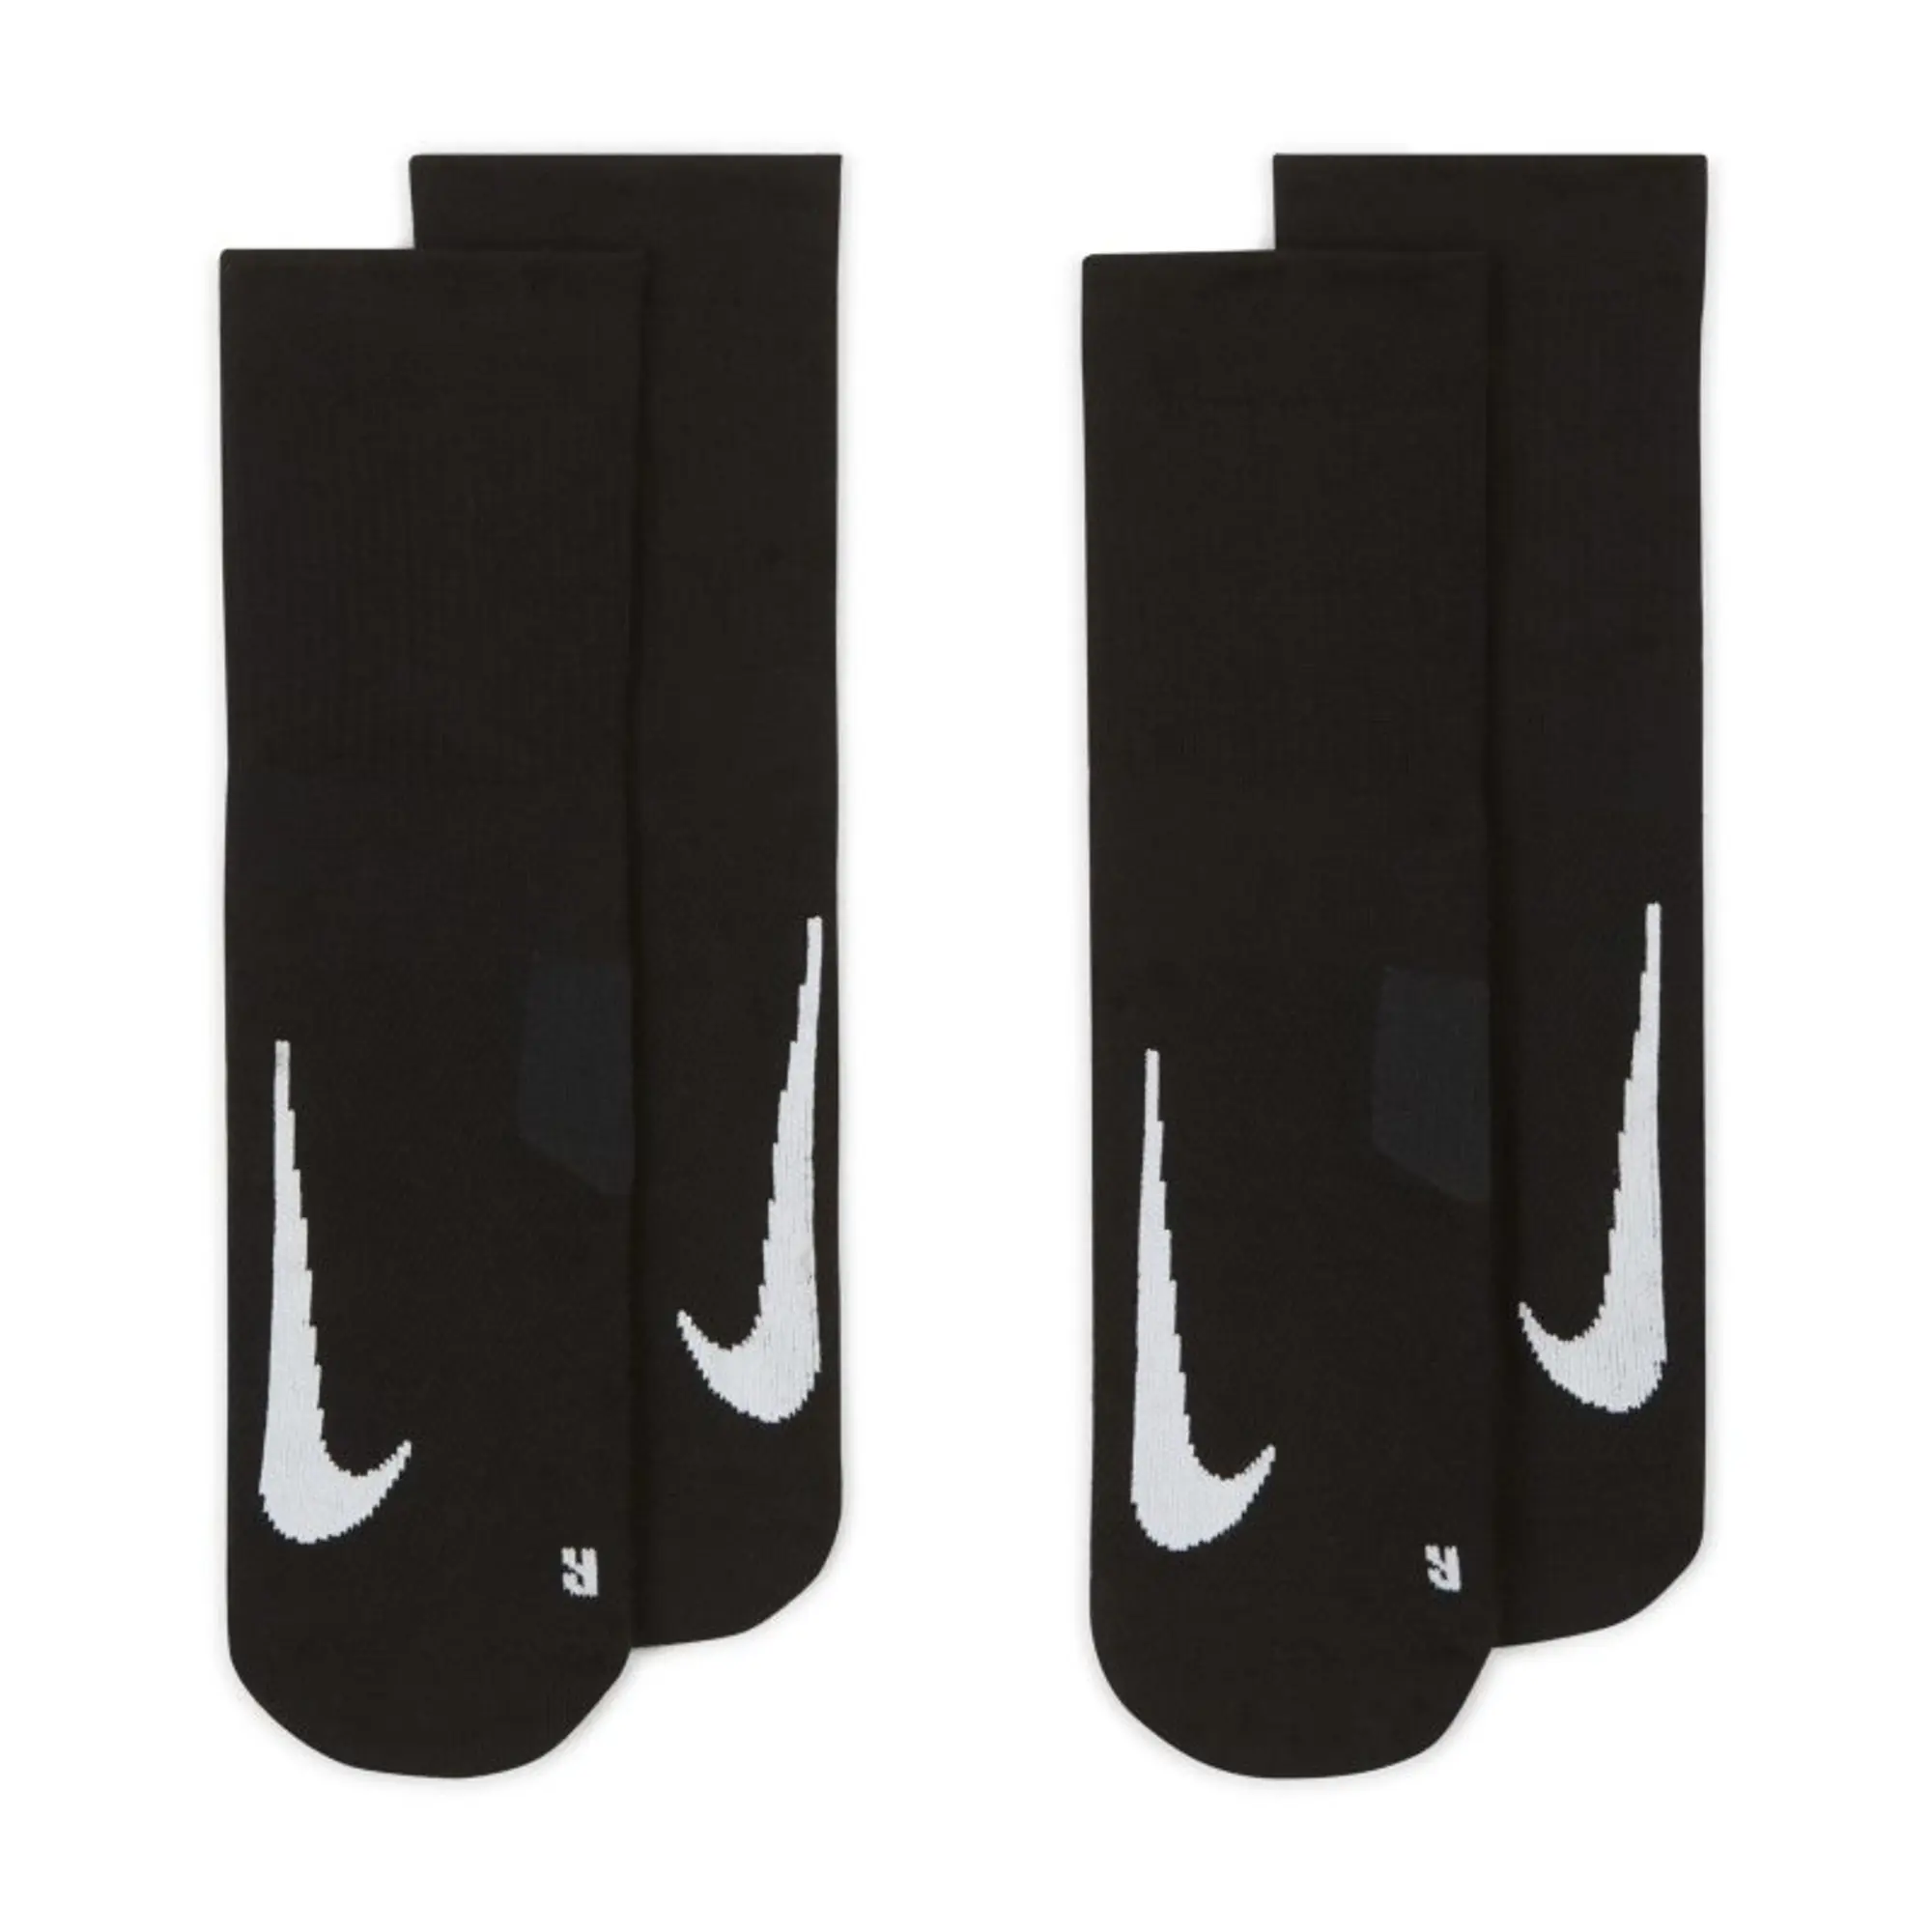 Nike Multiplier Sports Socks 2 Pack - Black, White